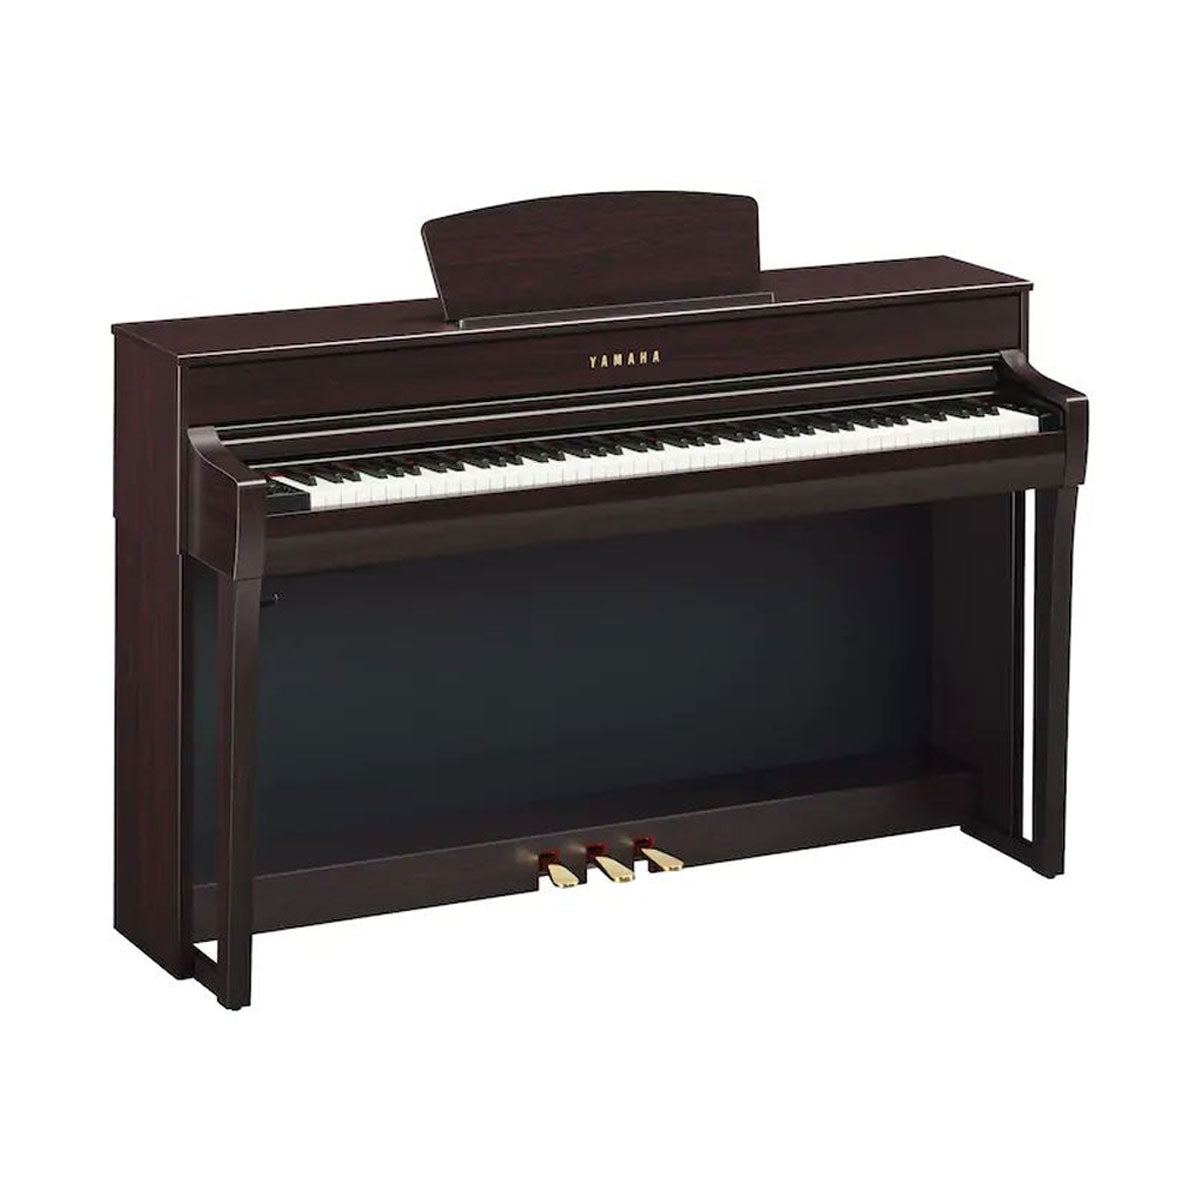 Yamaha CLP-735R Clavinova 88-Keys Digital Piano With Bench